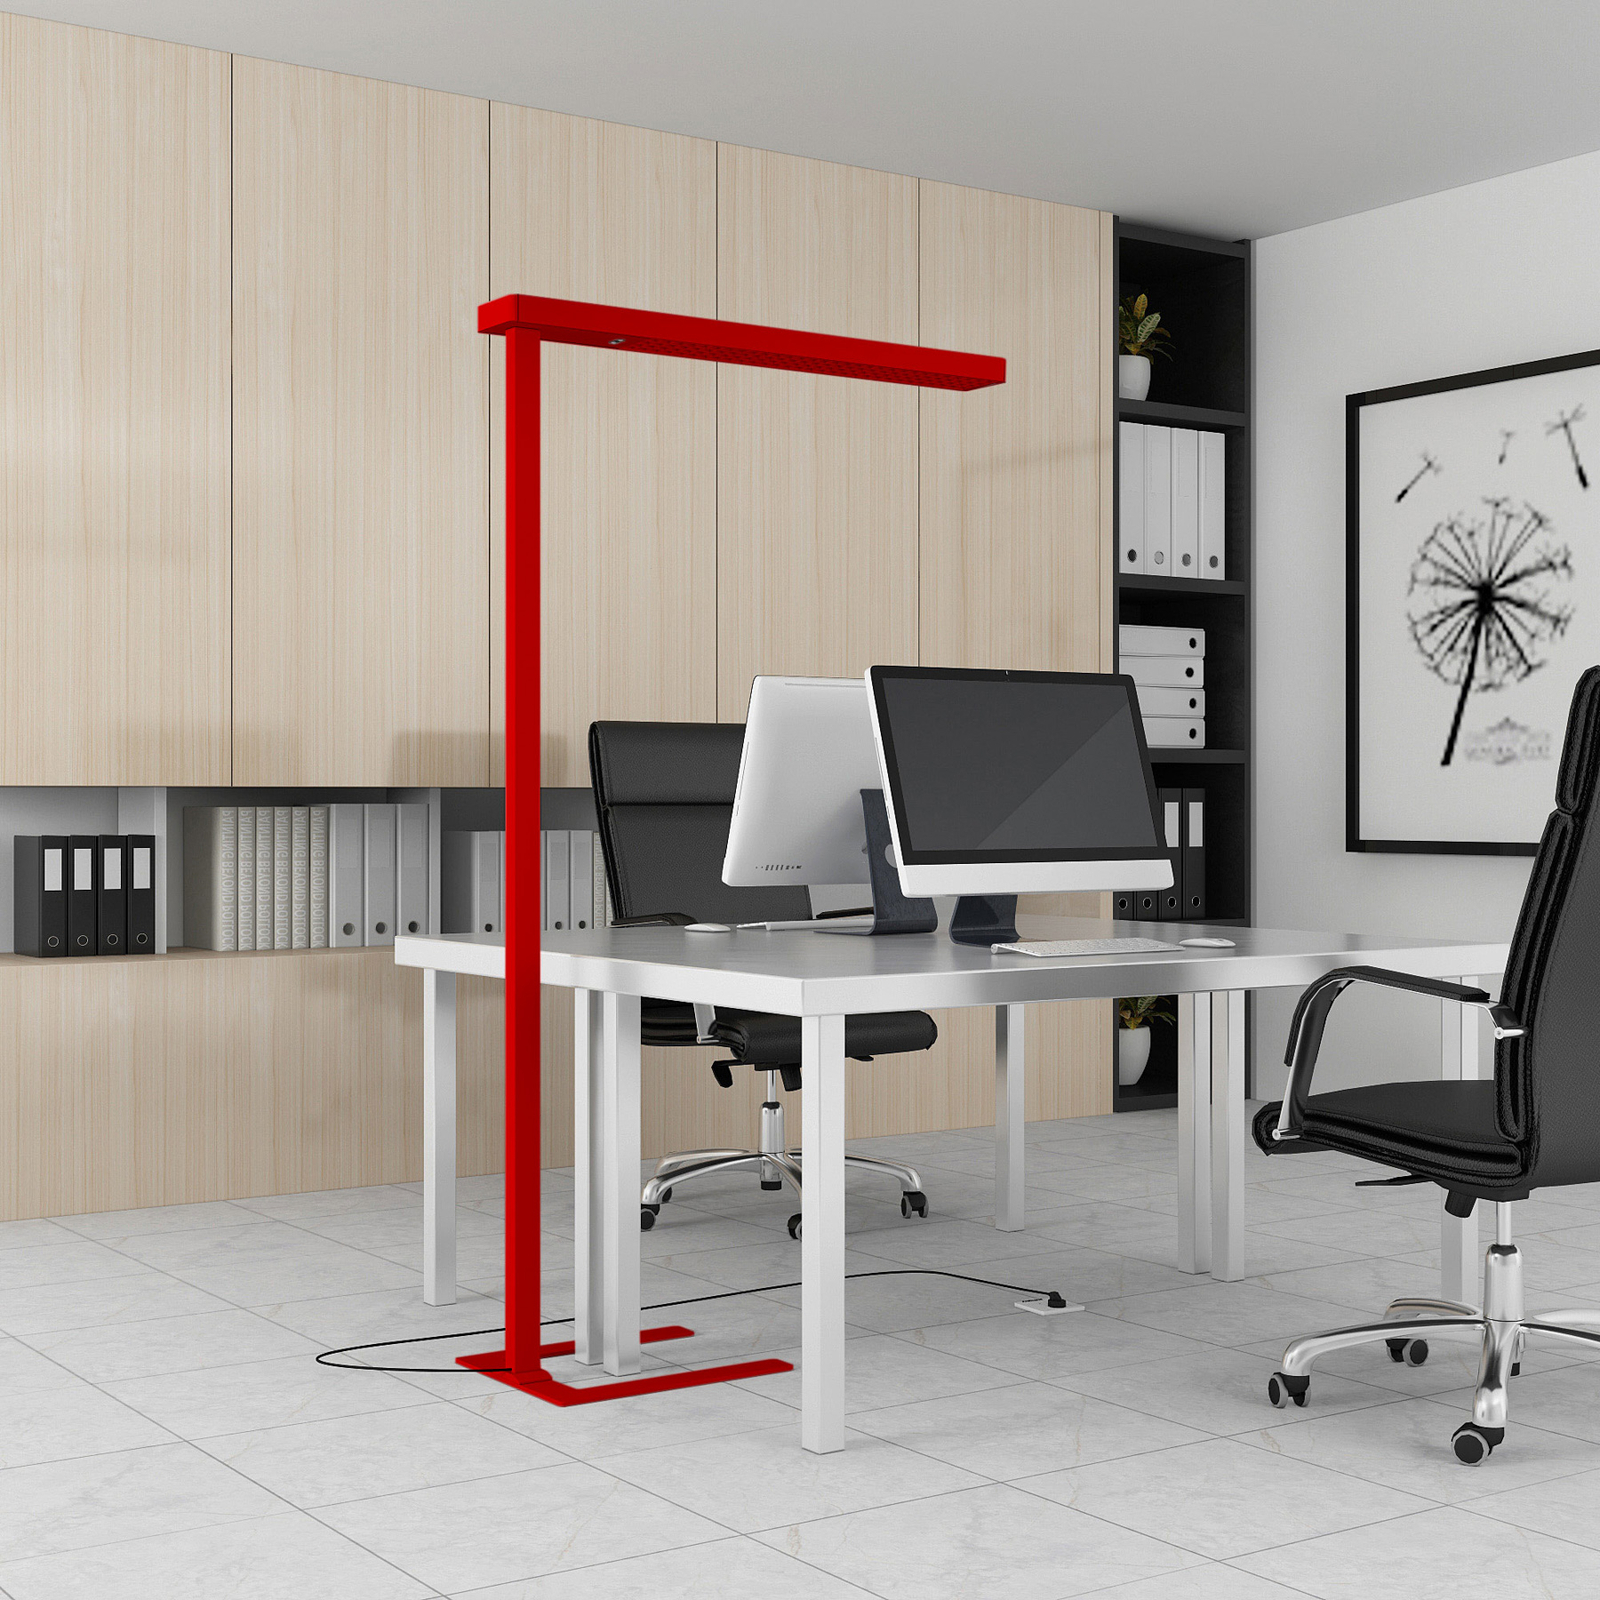 Arcchio kantoor vloerlamp Susi, rood, aluminium, dimmer, sensor